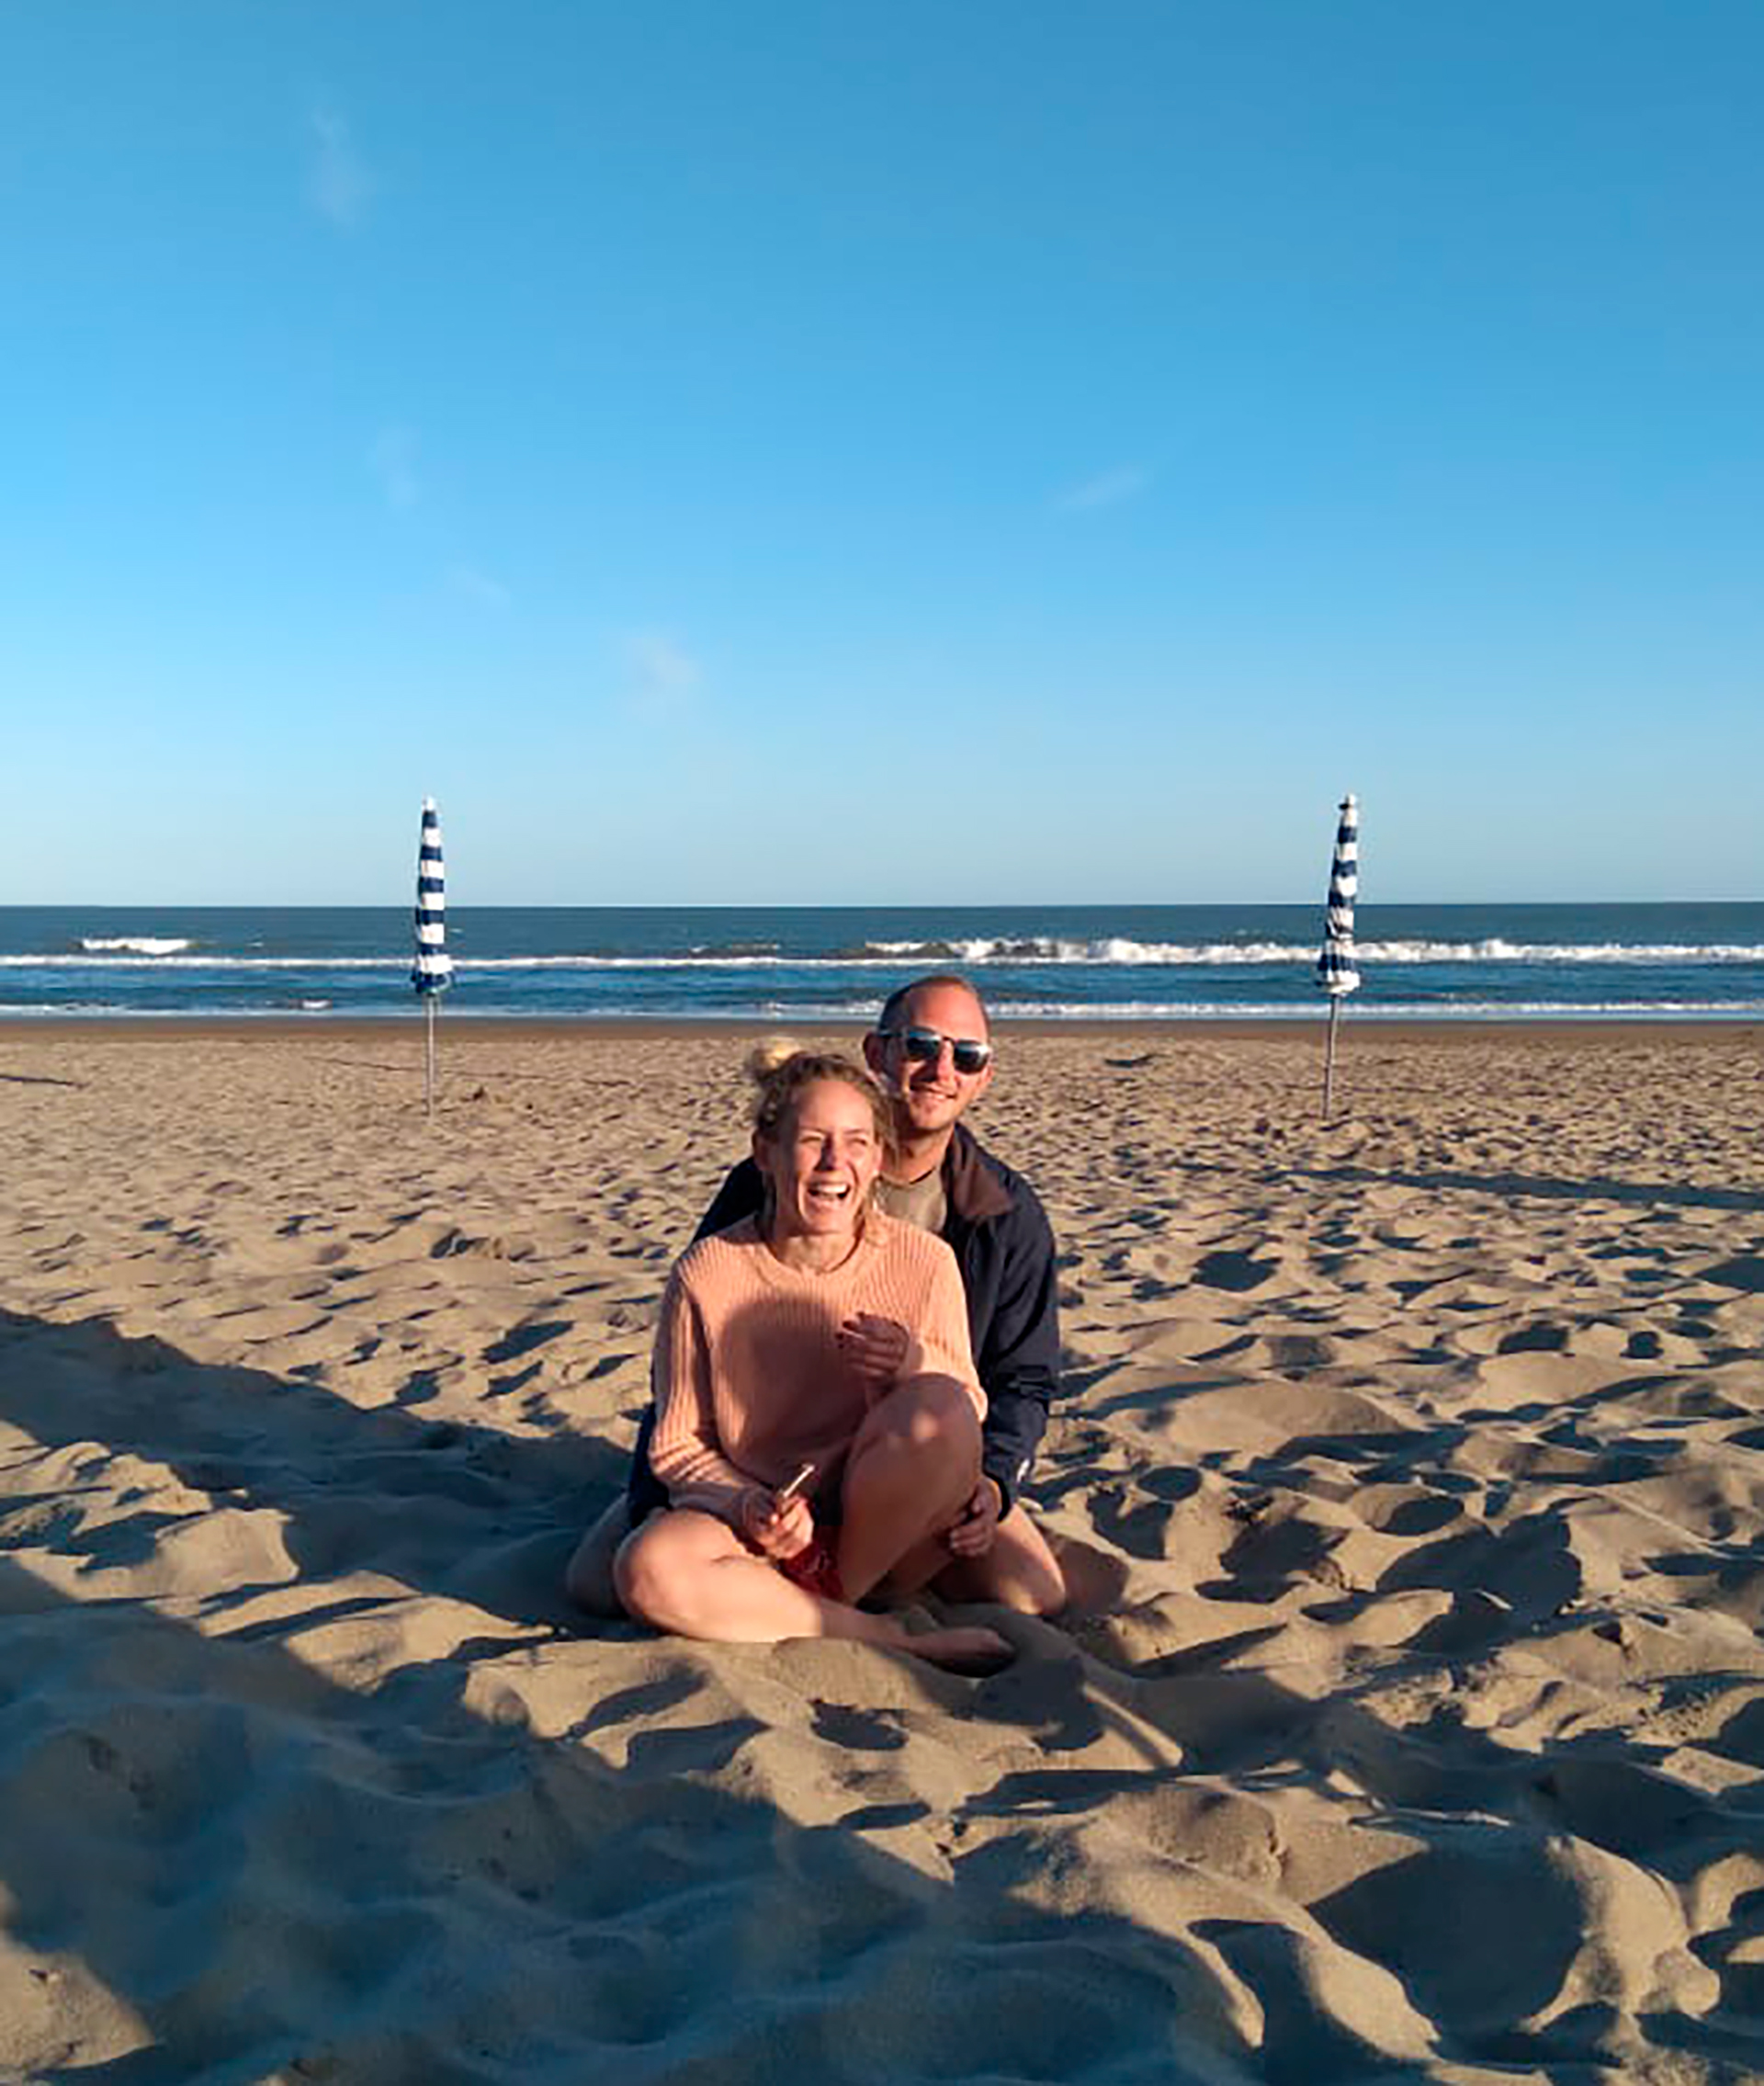 El matrimonio disfrutando de la playa